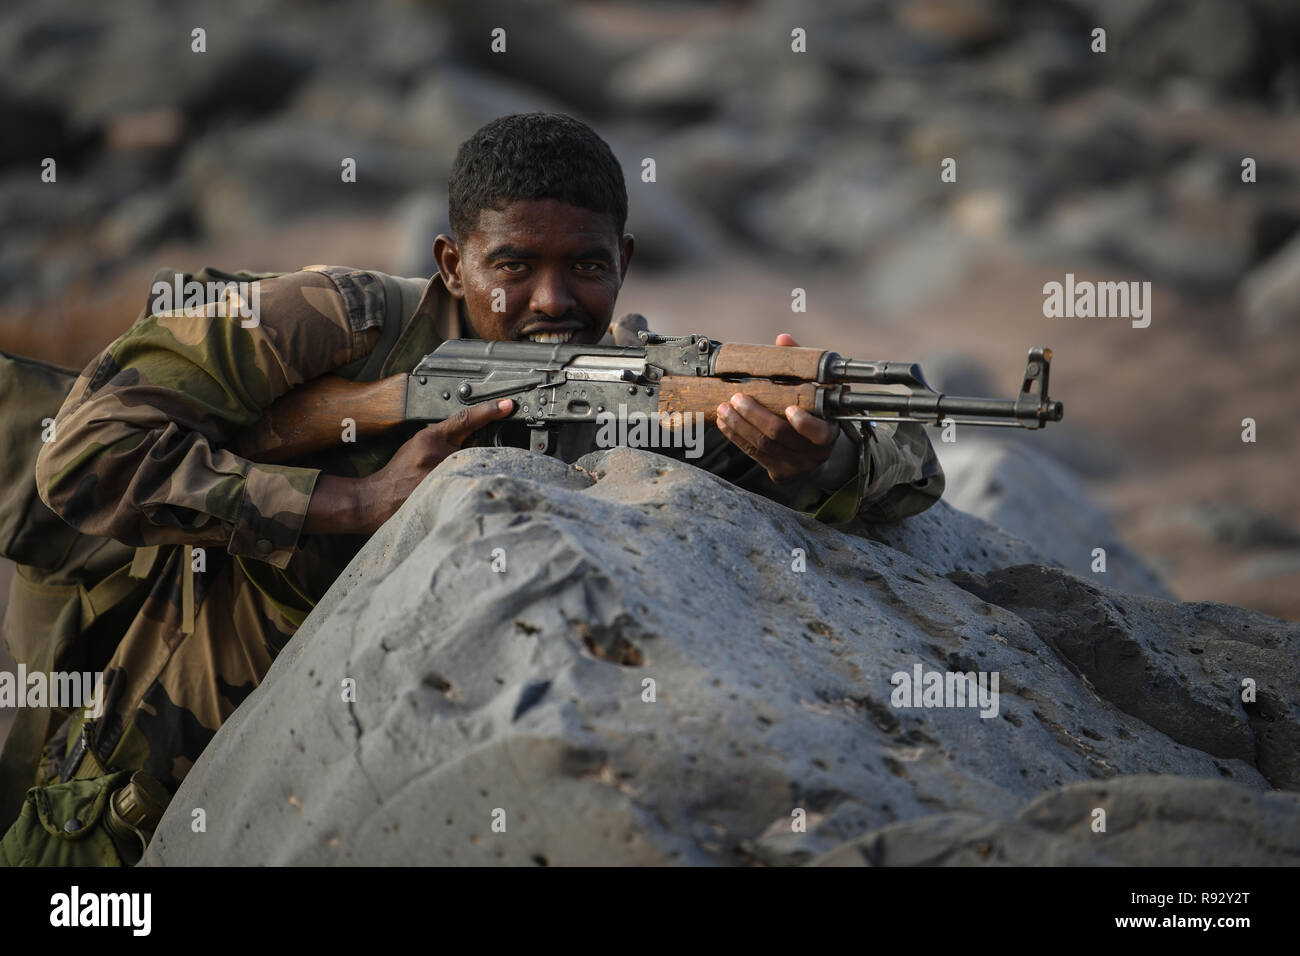 Un soldado de Djibouti con el Batallón de Intervención Rápida durante la táctica de infantería y procedimientos de capacitación impartidos por las fuerzas estadounidenses el 18 de diciembre de 2018, cerca de la ciudad de Djibouti, Djibouti. Foto de stock